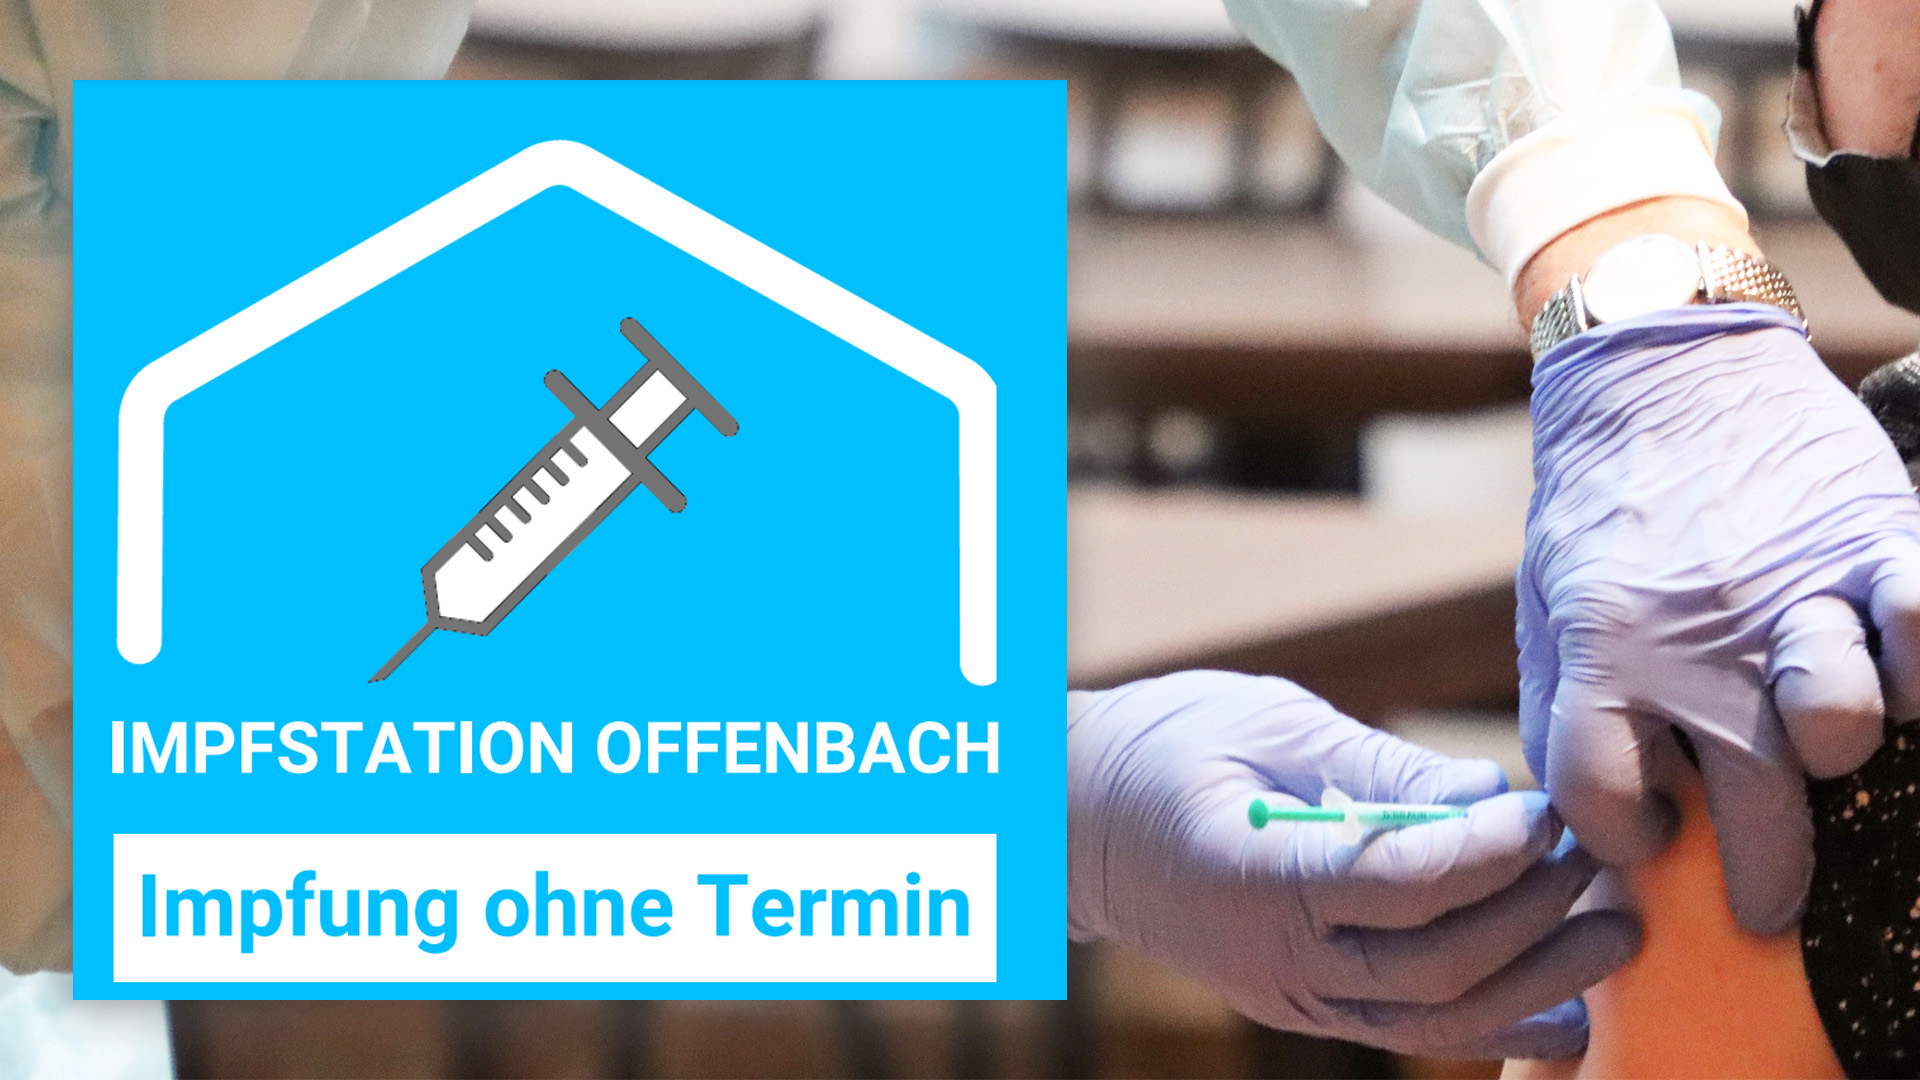 Impfstation Offenbach Bernardbau impfen ohne Termin Corona